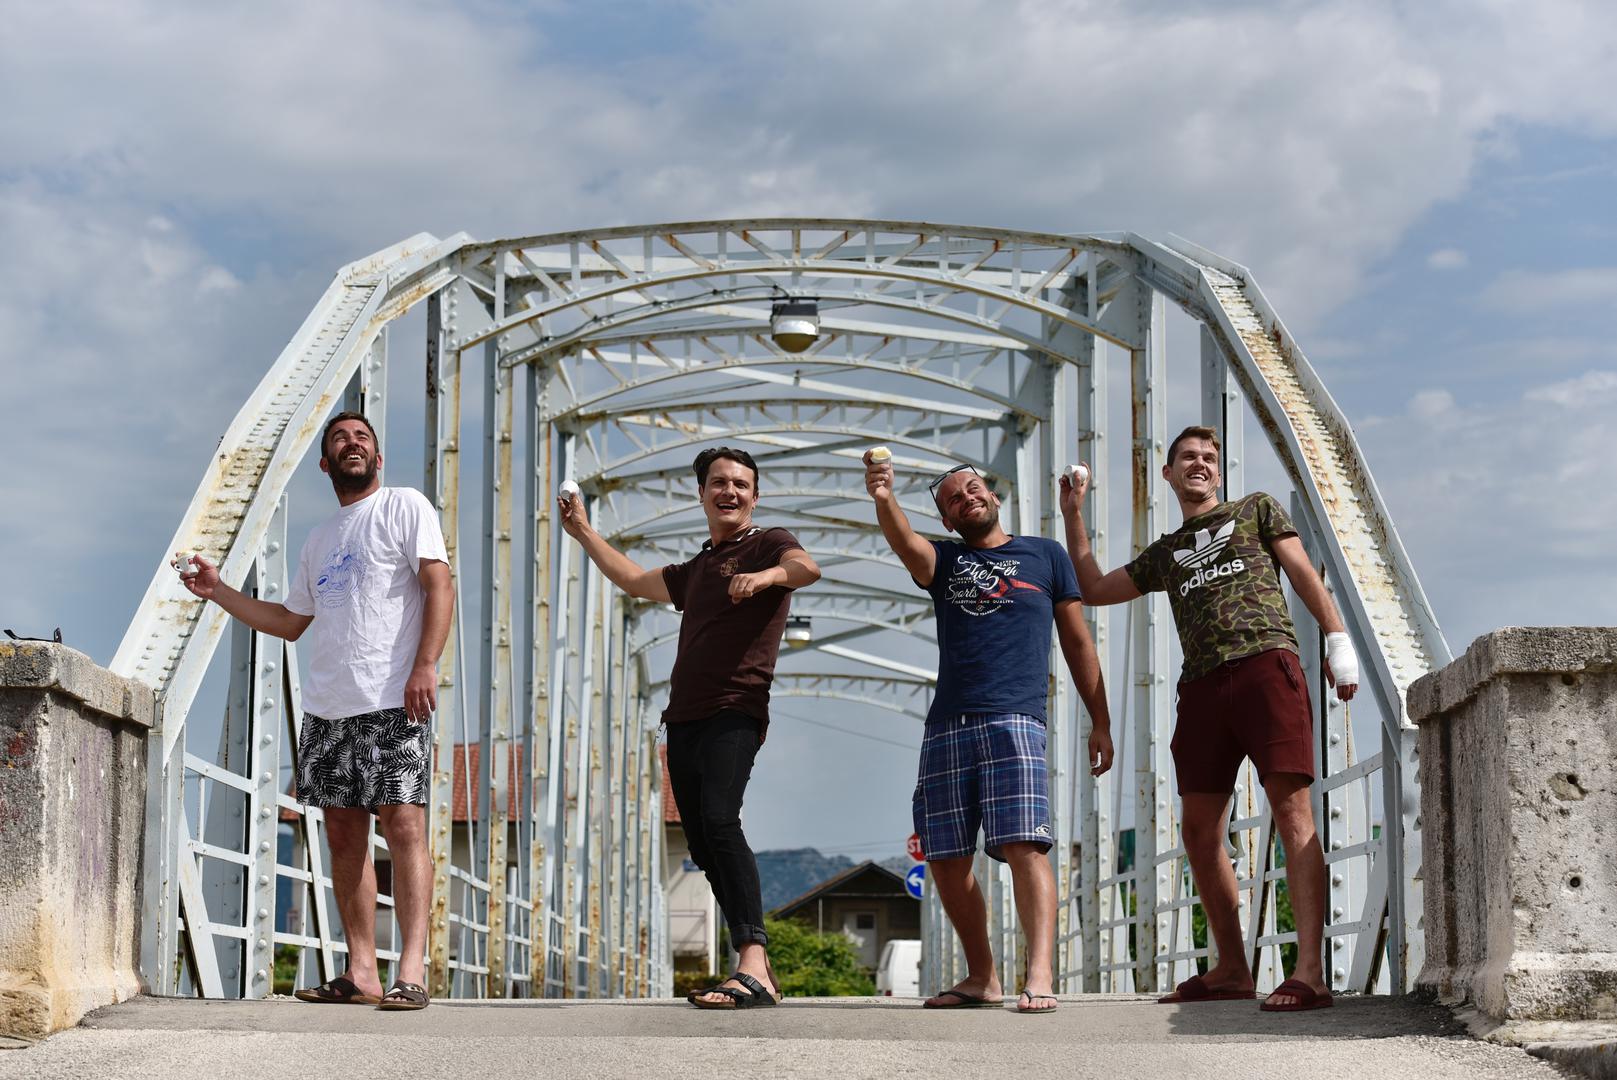 Ljubo, Giovanni, James i Mame na opuzenskom mostu, gdje se u kolovozu održava svjetsko prvenstvo bacanja čikara u rijeku